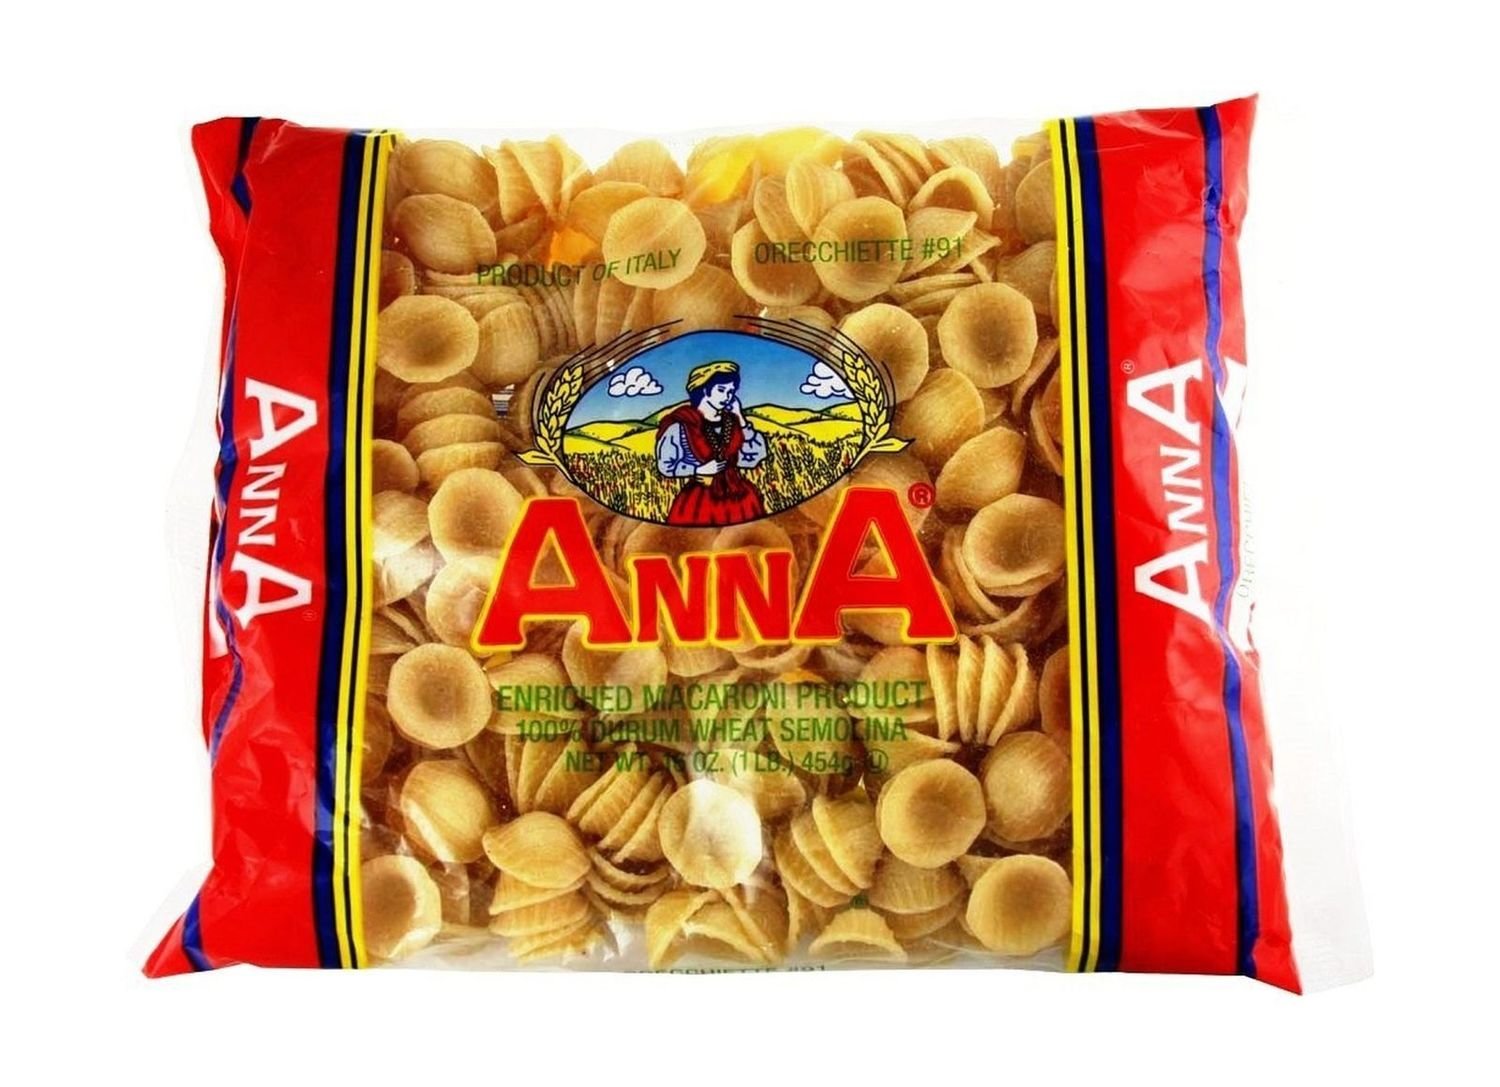 Anna Pasta - Orecchiette #91